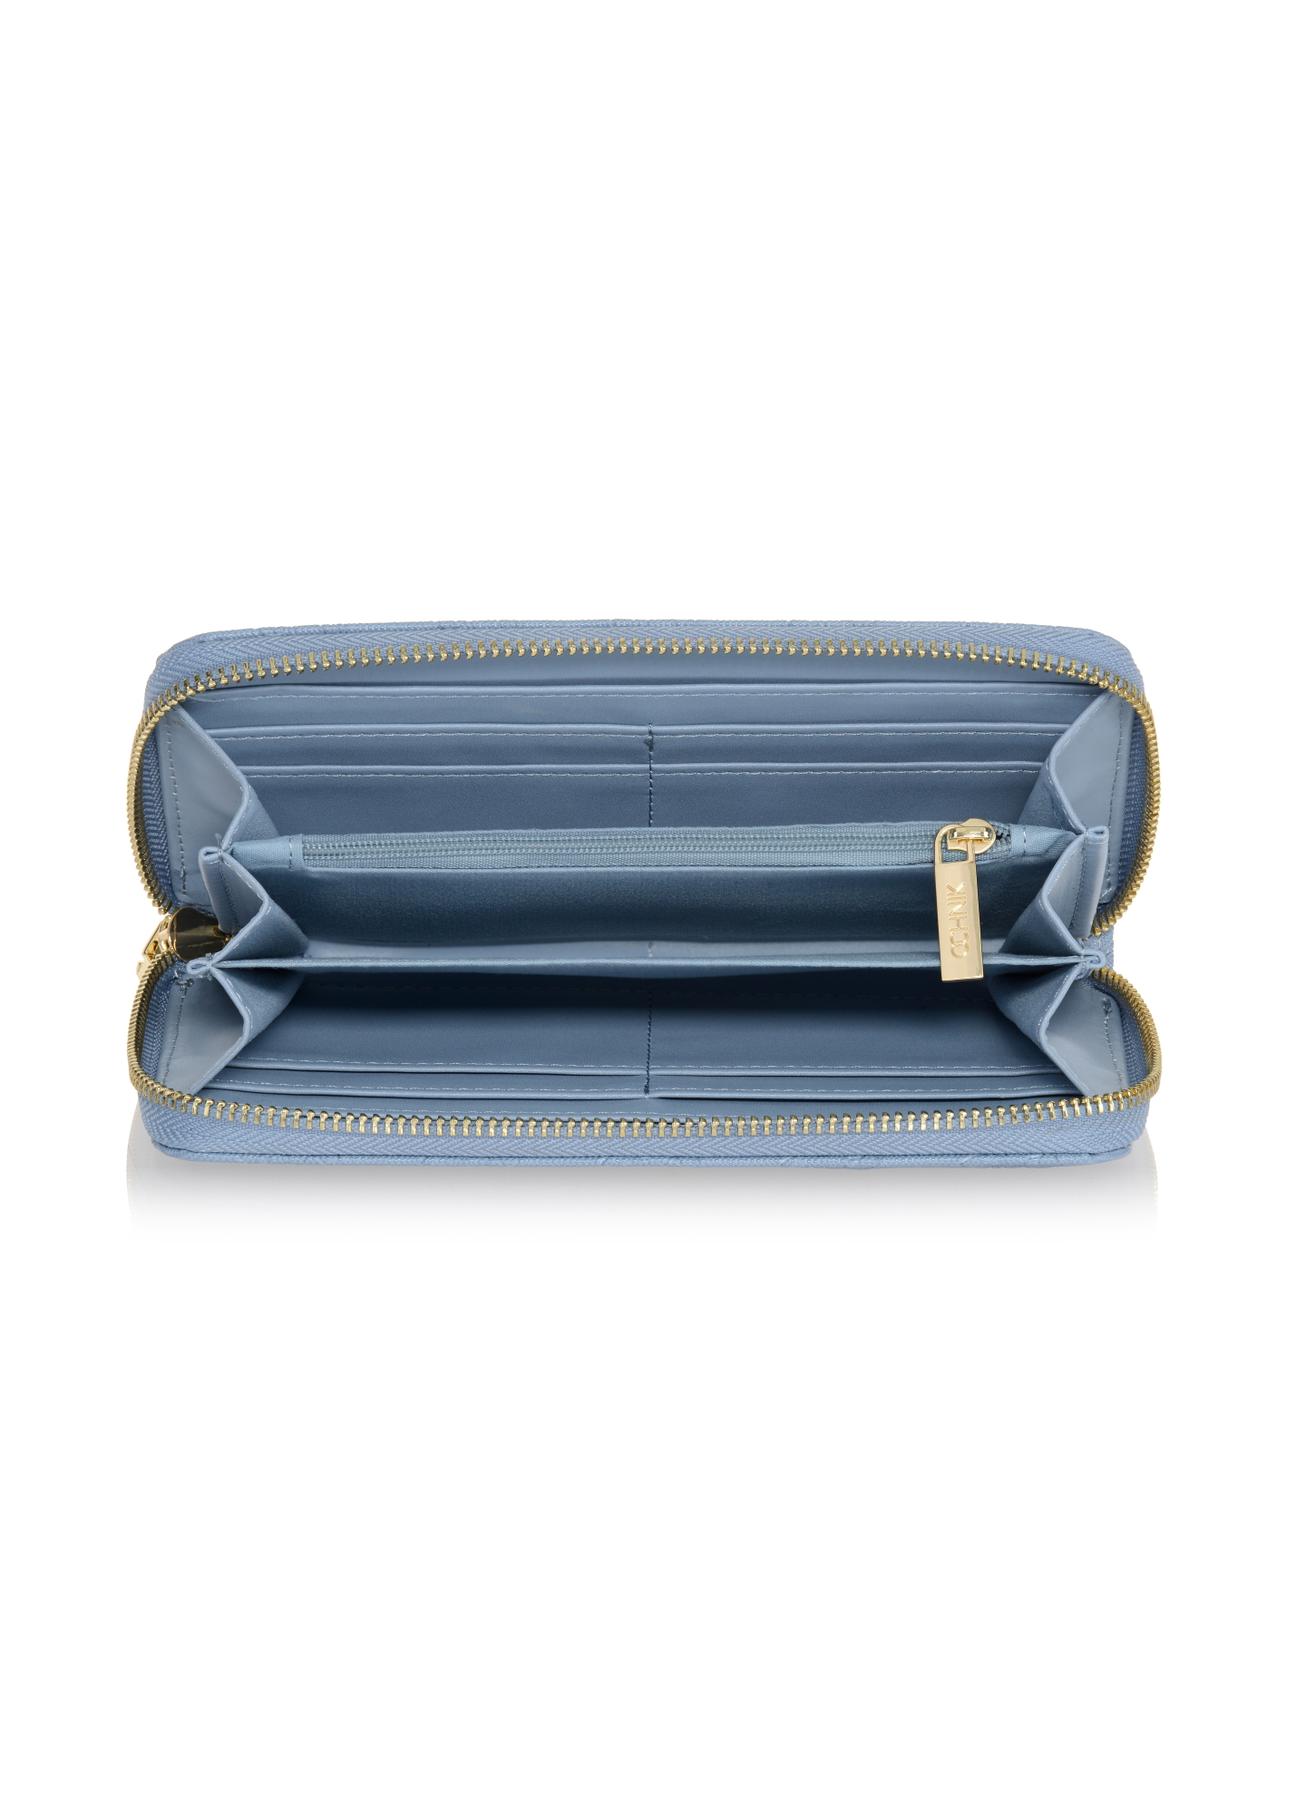 Duży błękitny portfel damski z tłoczeniem POREC-0329-61(W23)